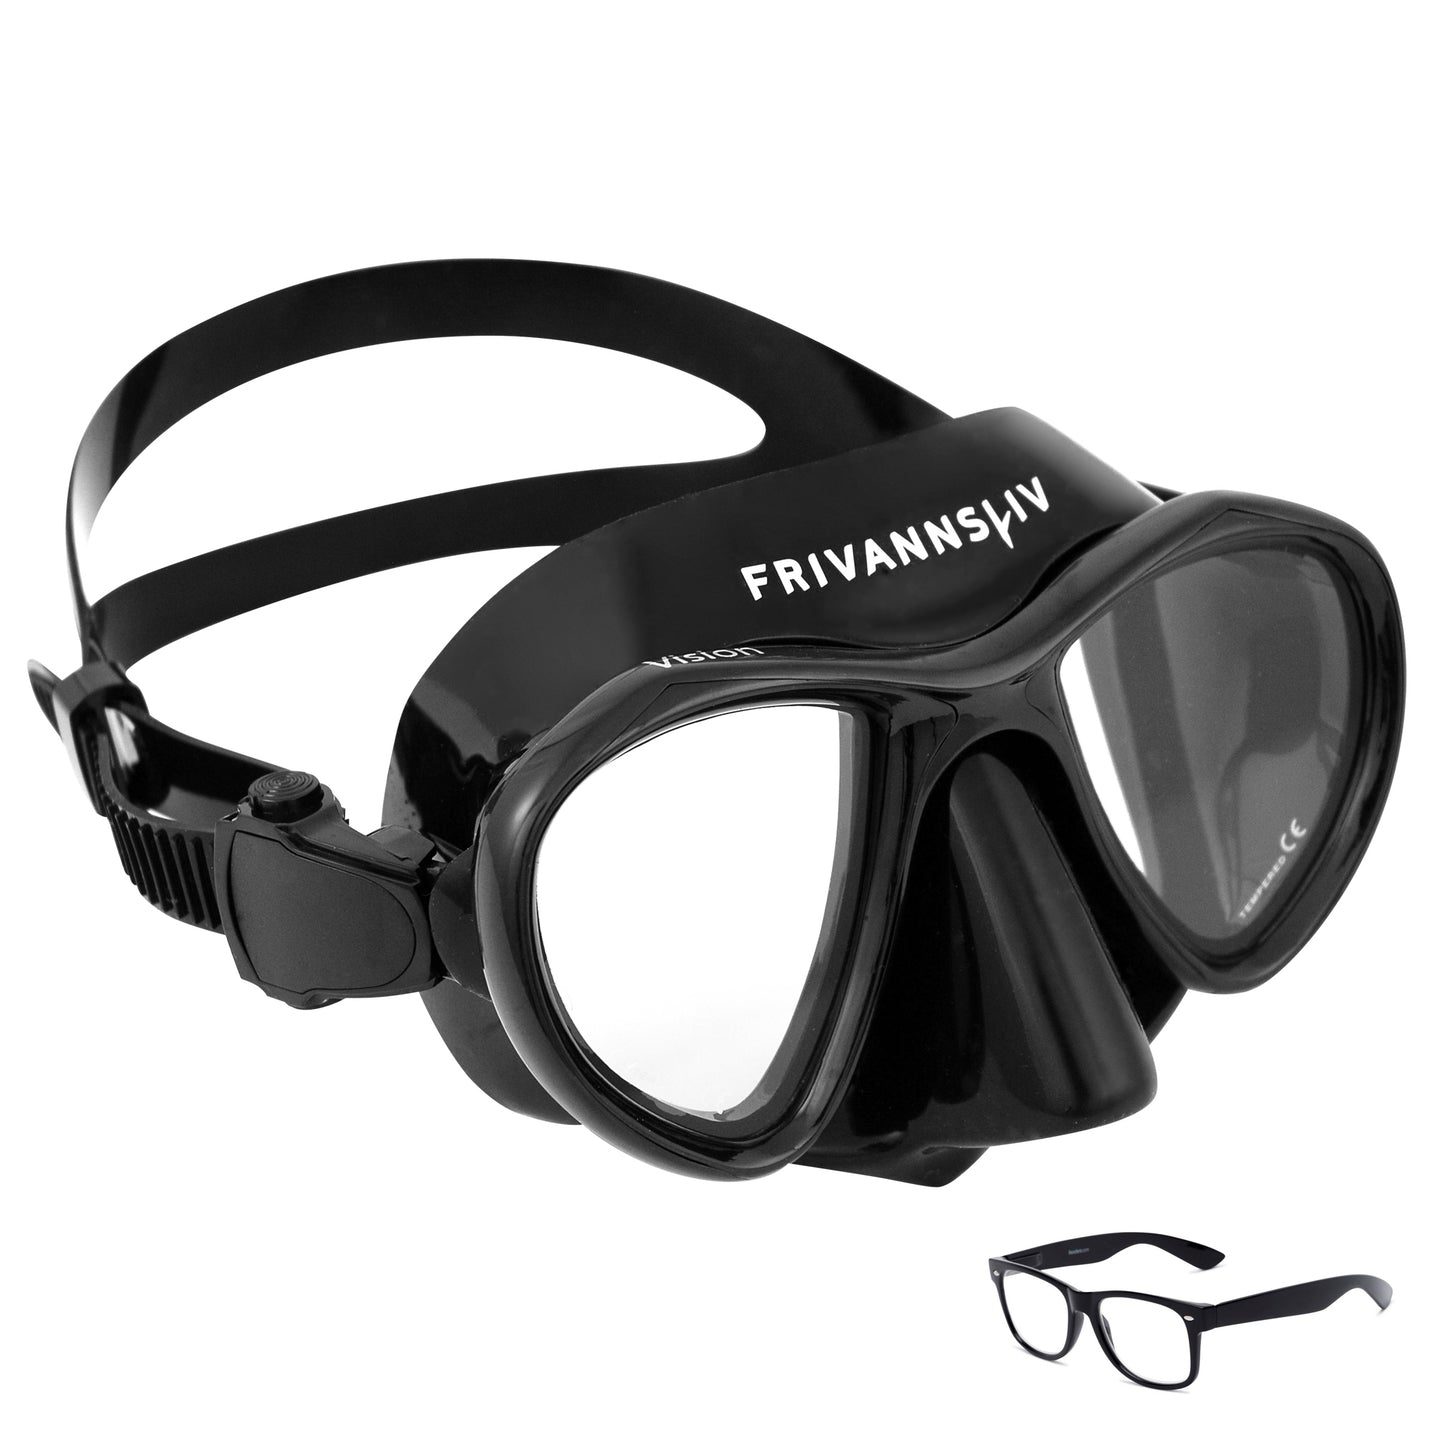 Frivannsliv® Vision Optics